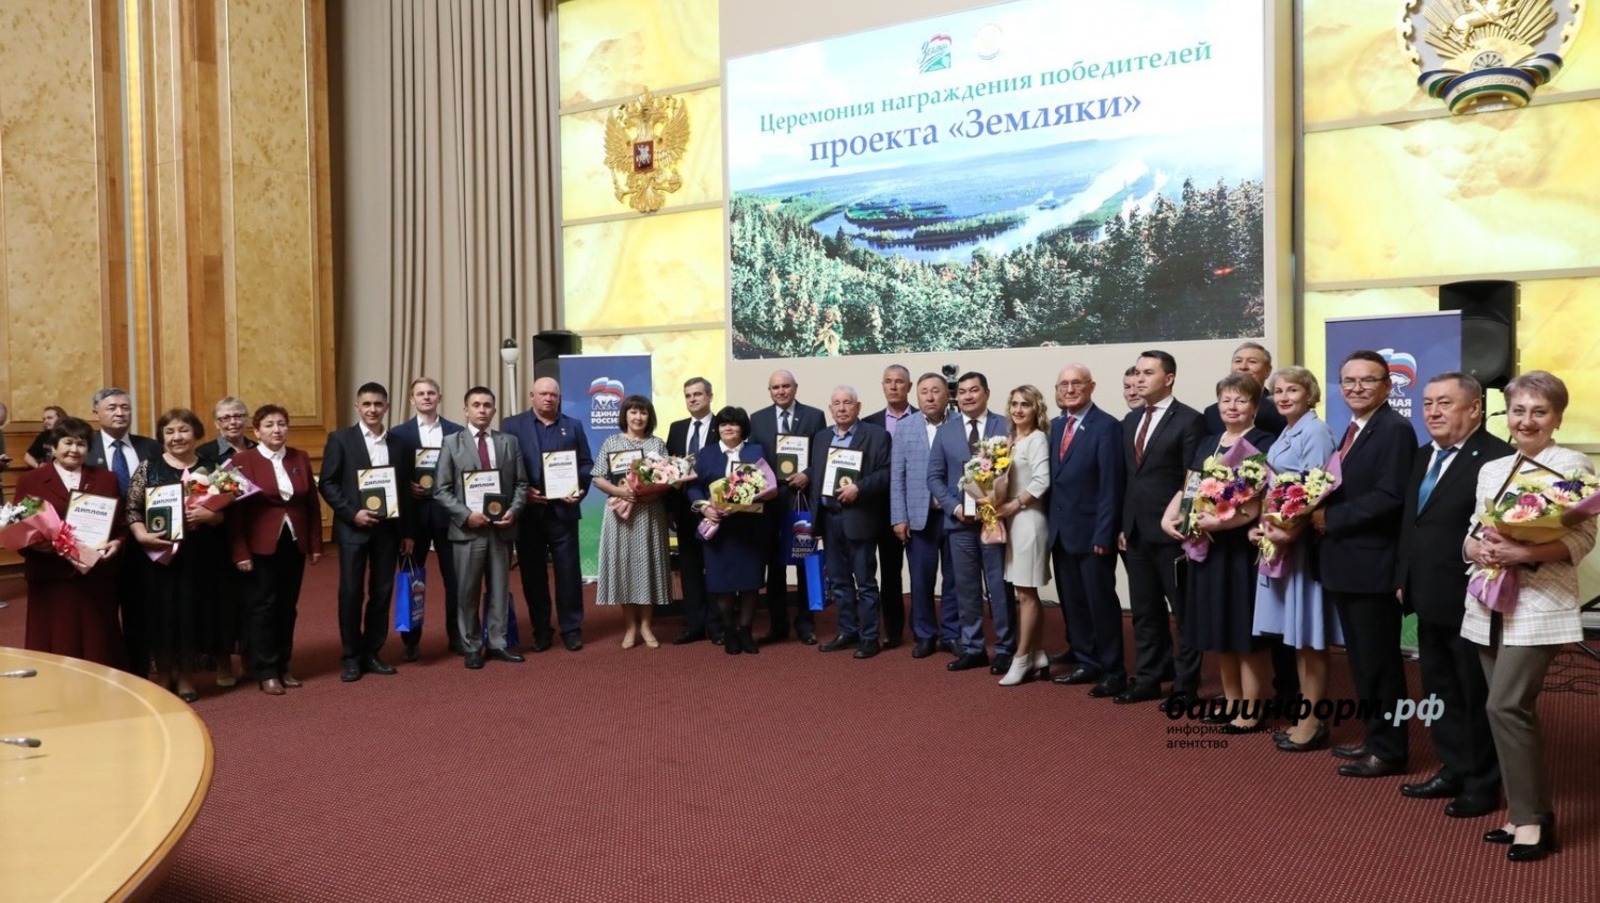 В Уфе чествовали победителей проектов «Атайсал» и «Земляки»